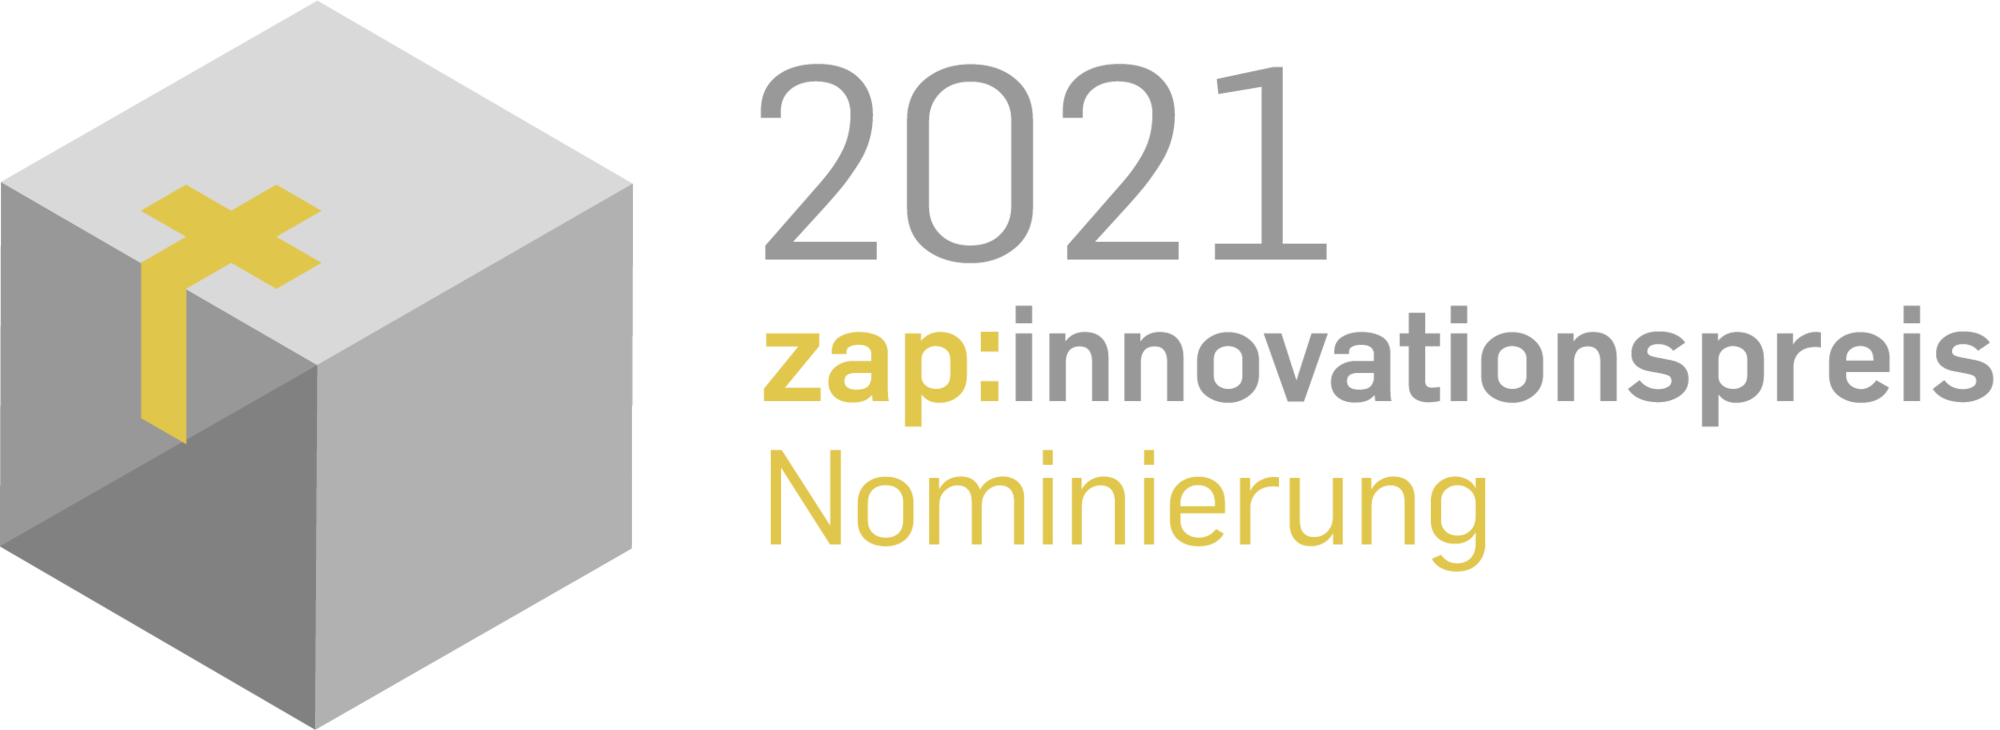 Das Logo "2021 zap-innovationspreis Nominierung" zeigt den Preis: einen Betonwürfel, in den ein vergoldetes Holzkreuz eingelassen ist.